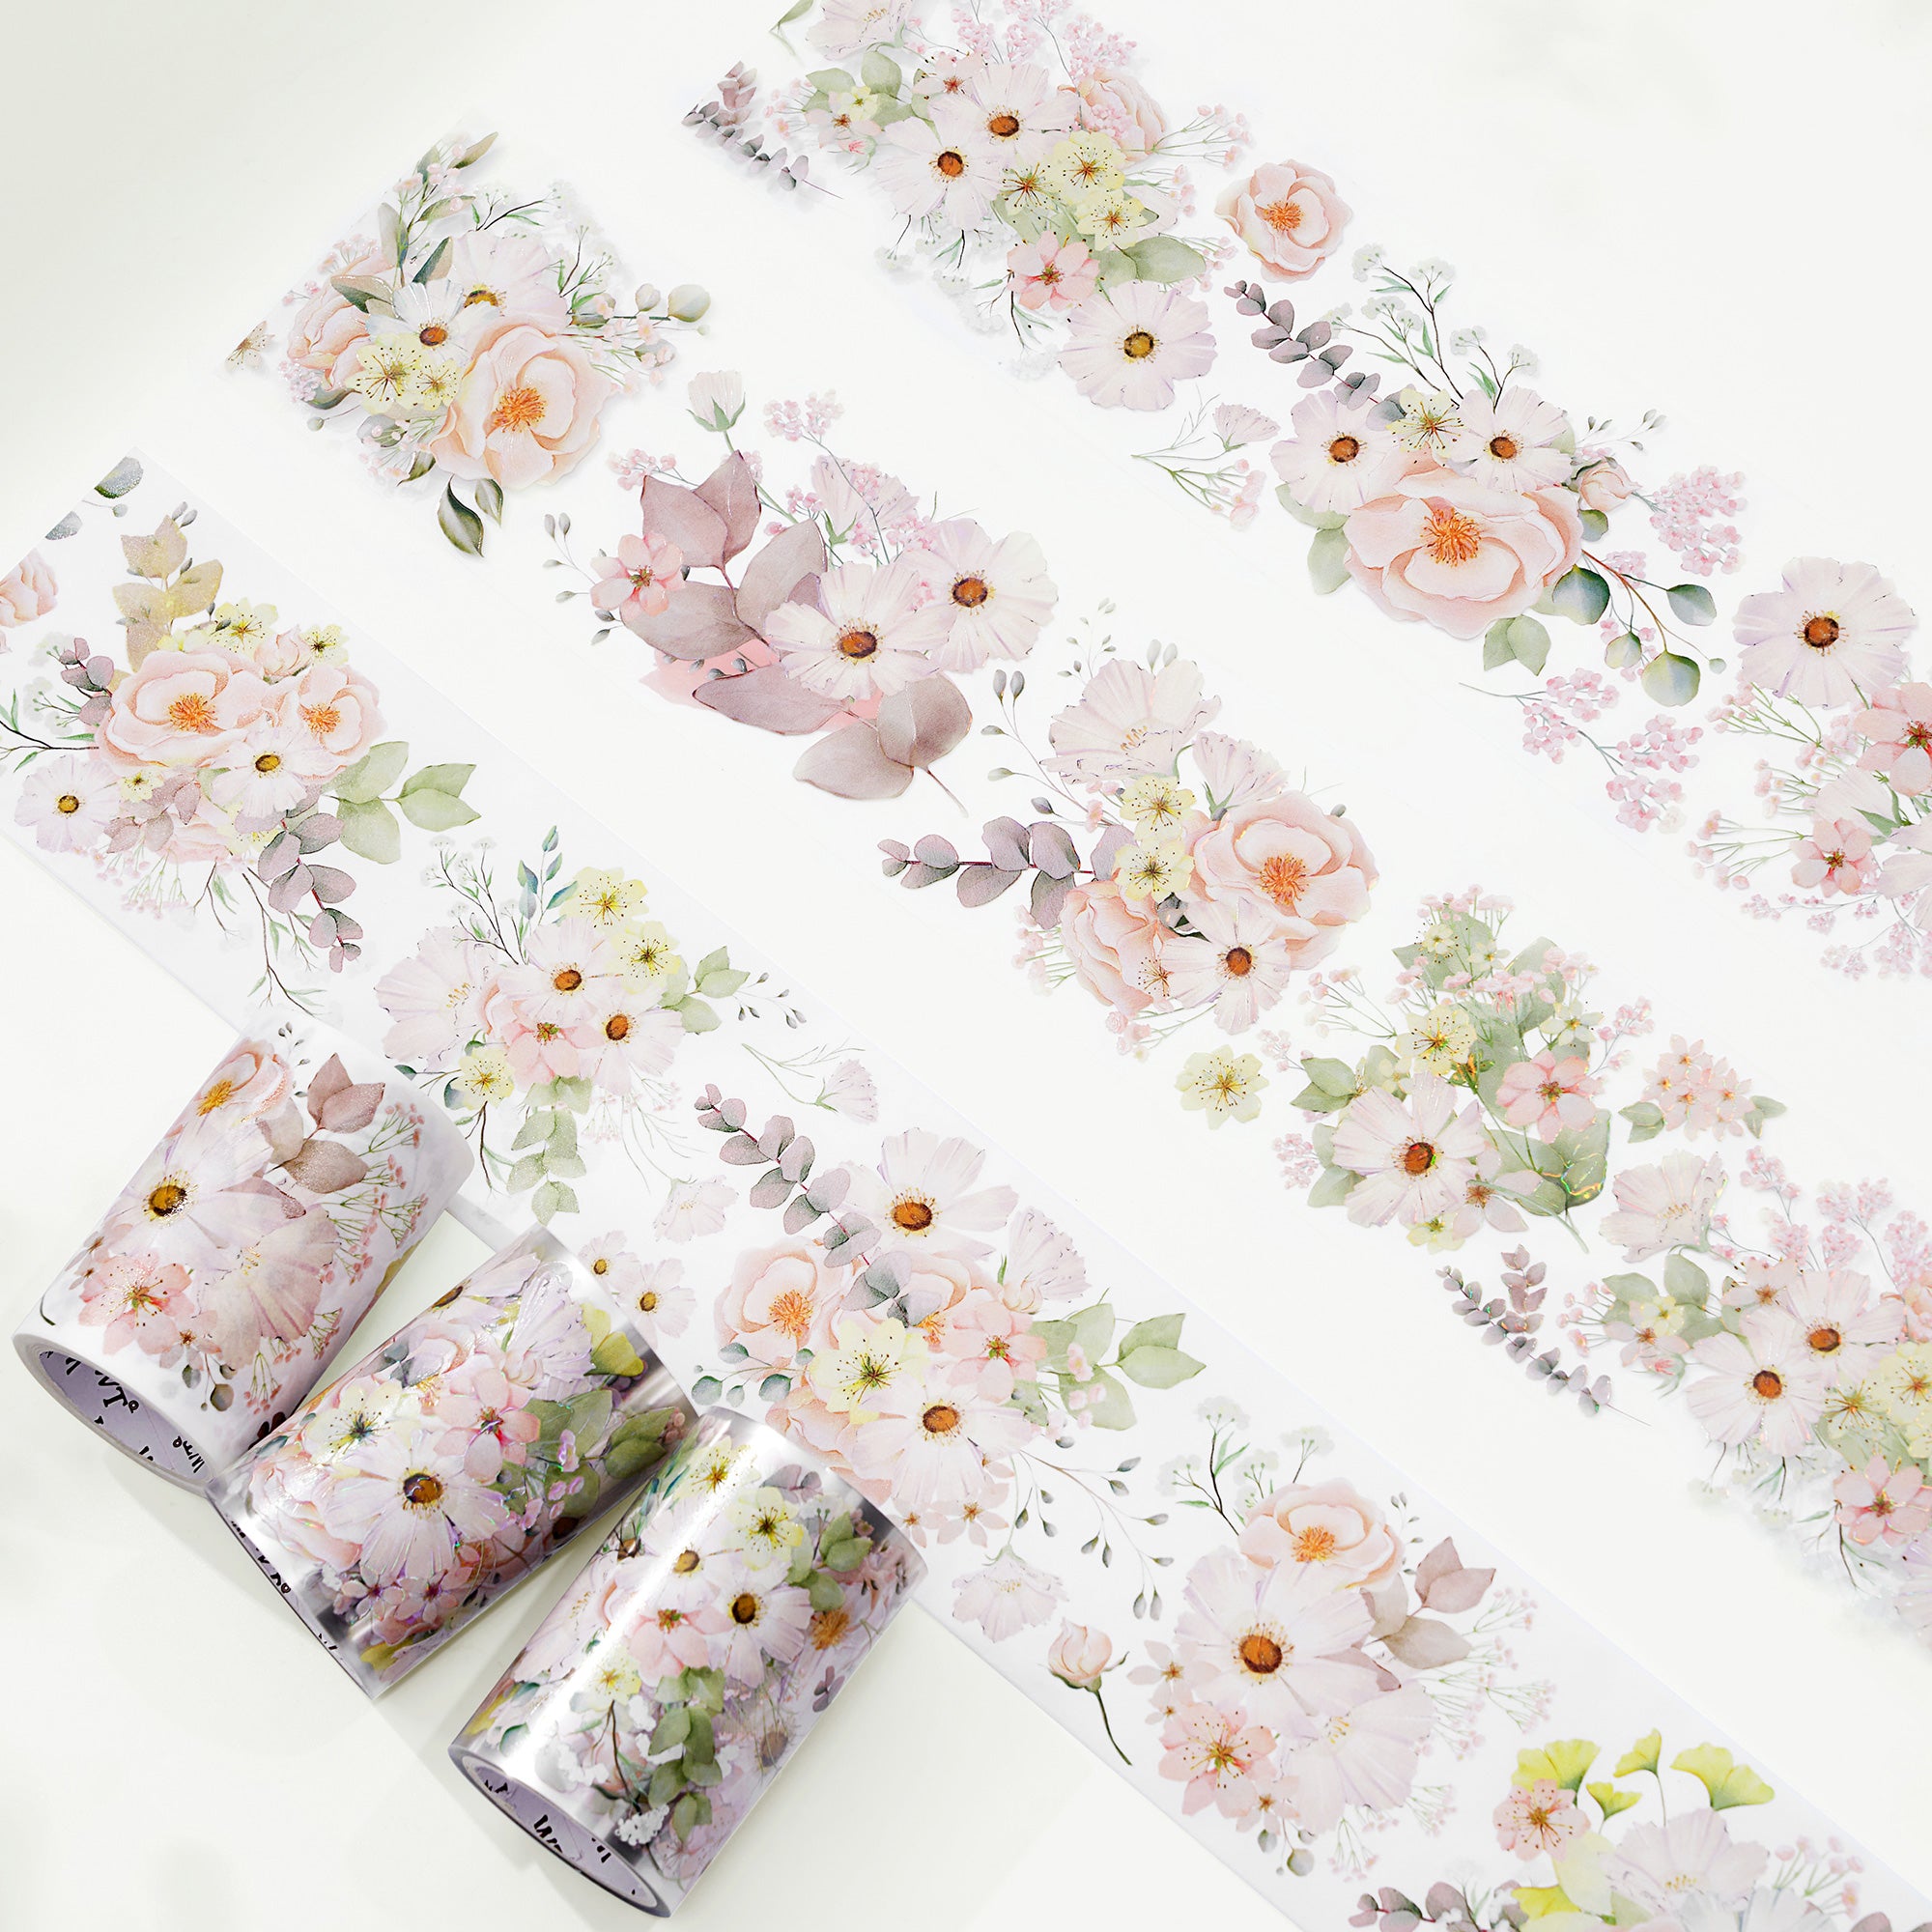 Cute Washi Tape : Macaron Washi Tape, Peach Rose Washi Tape